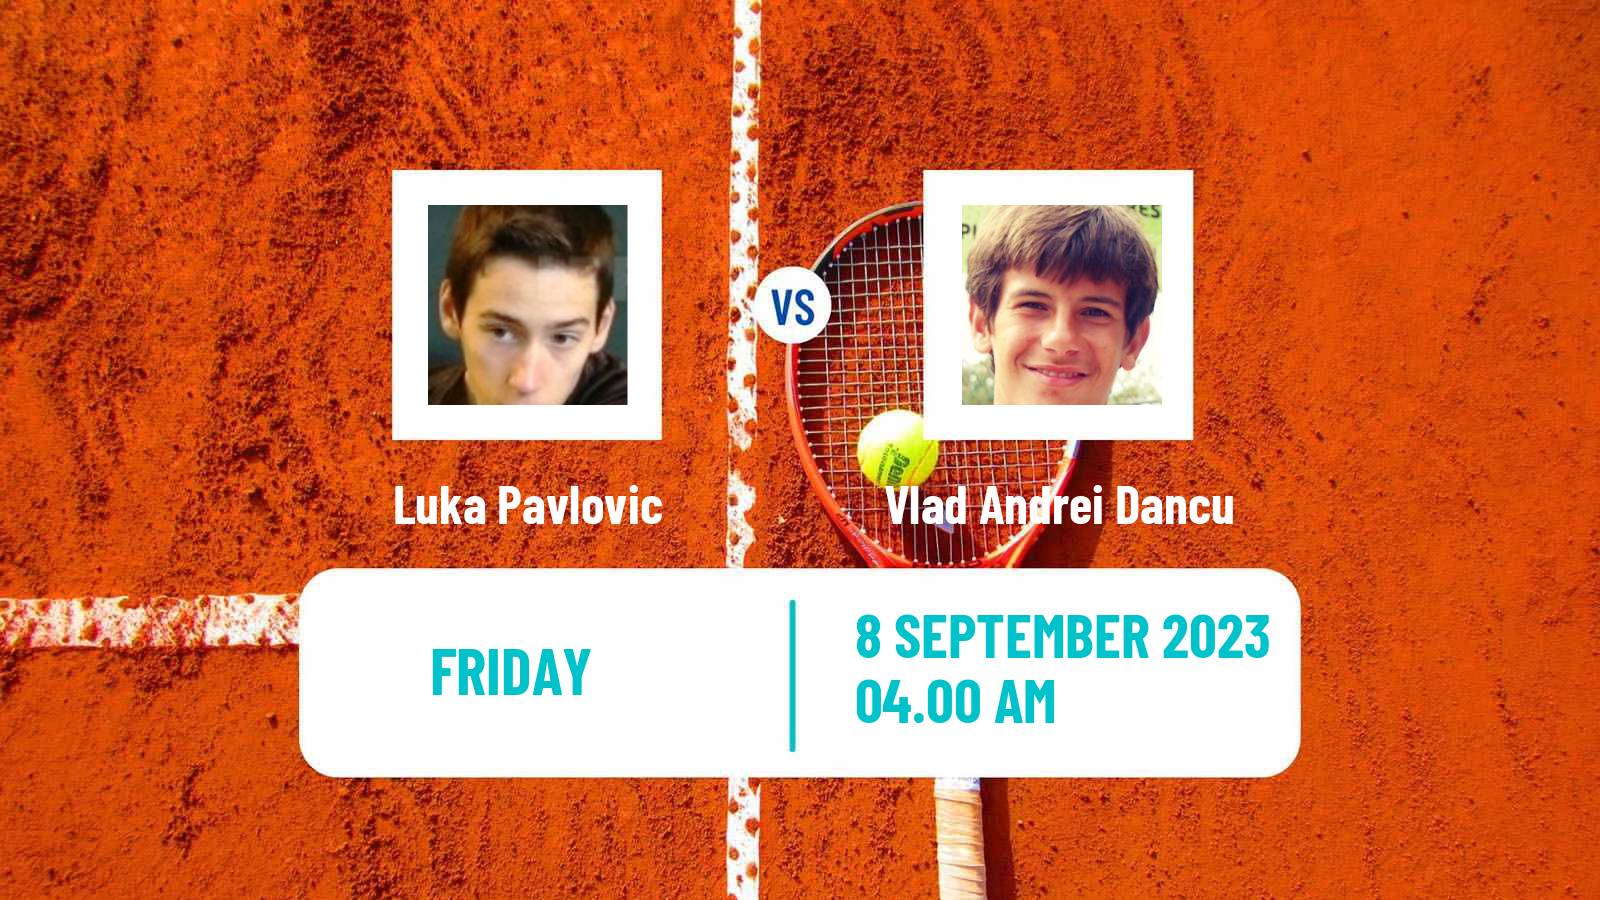 Tennis ITF M15 Pirot Men Luka Pavlovic - Vlad Andrei Dancu